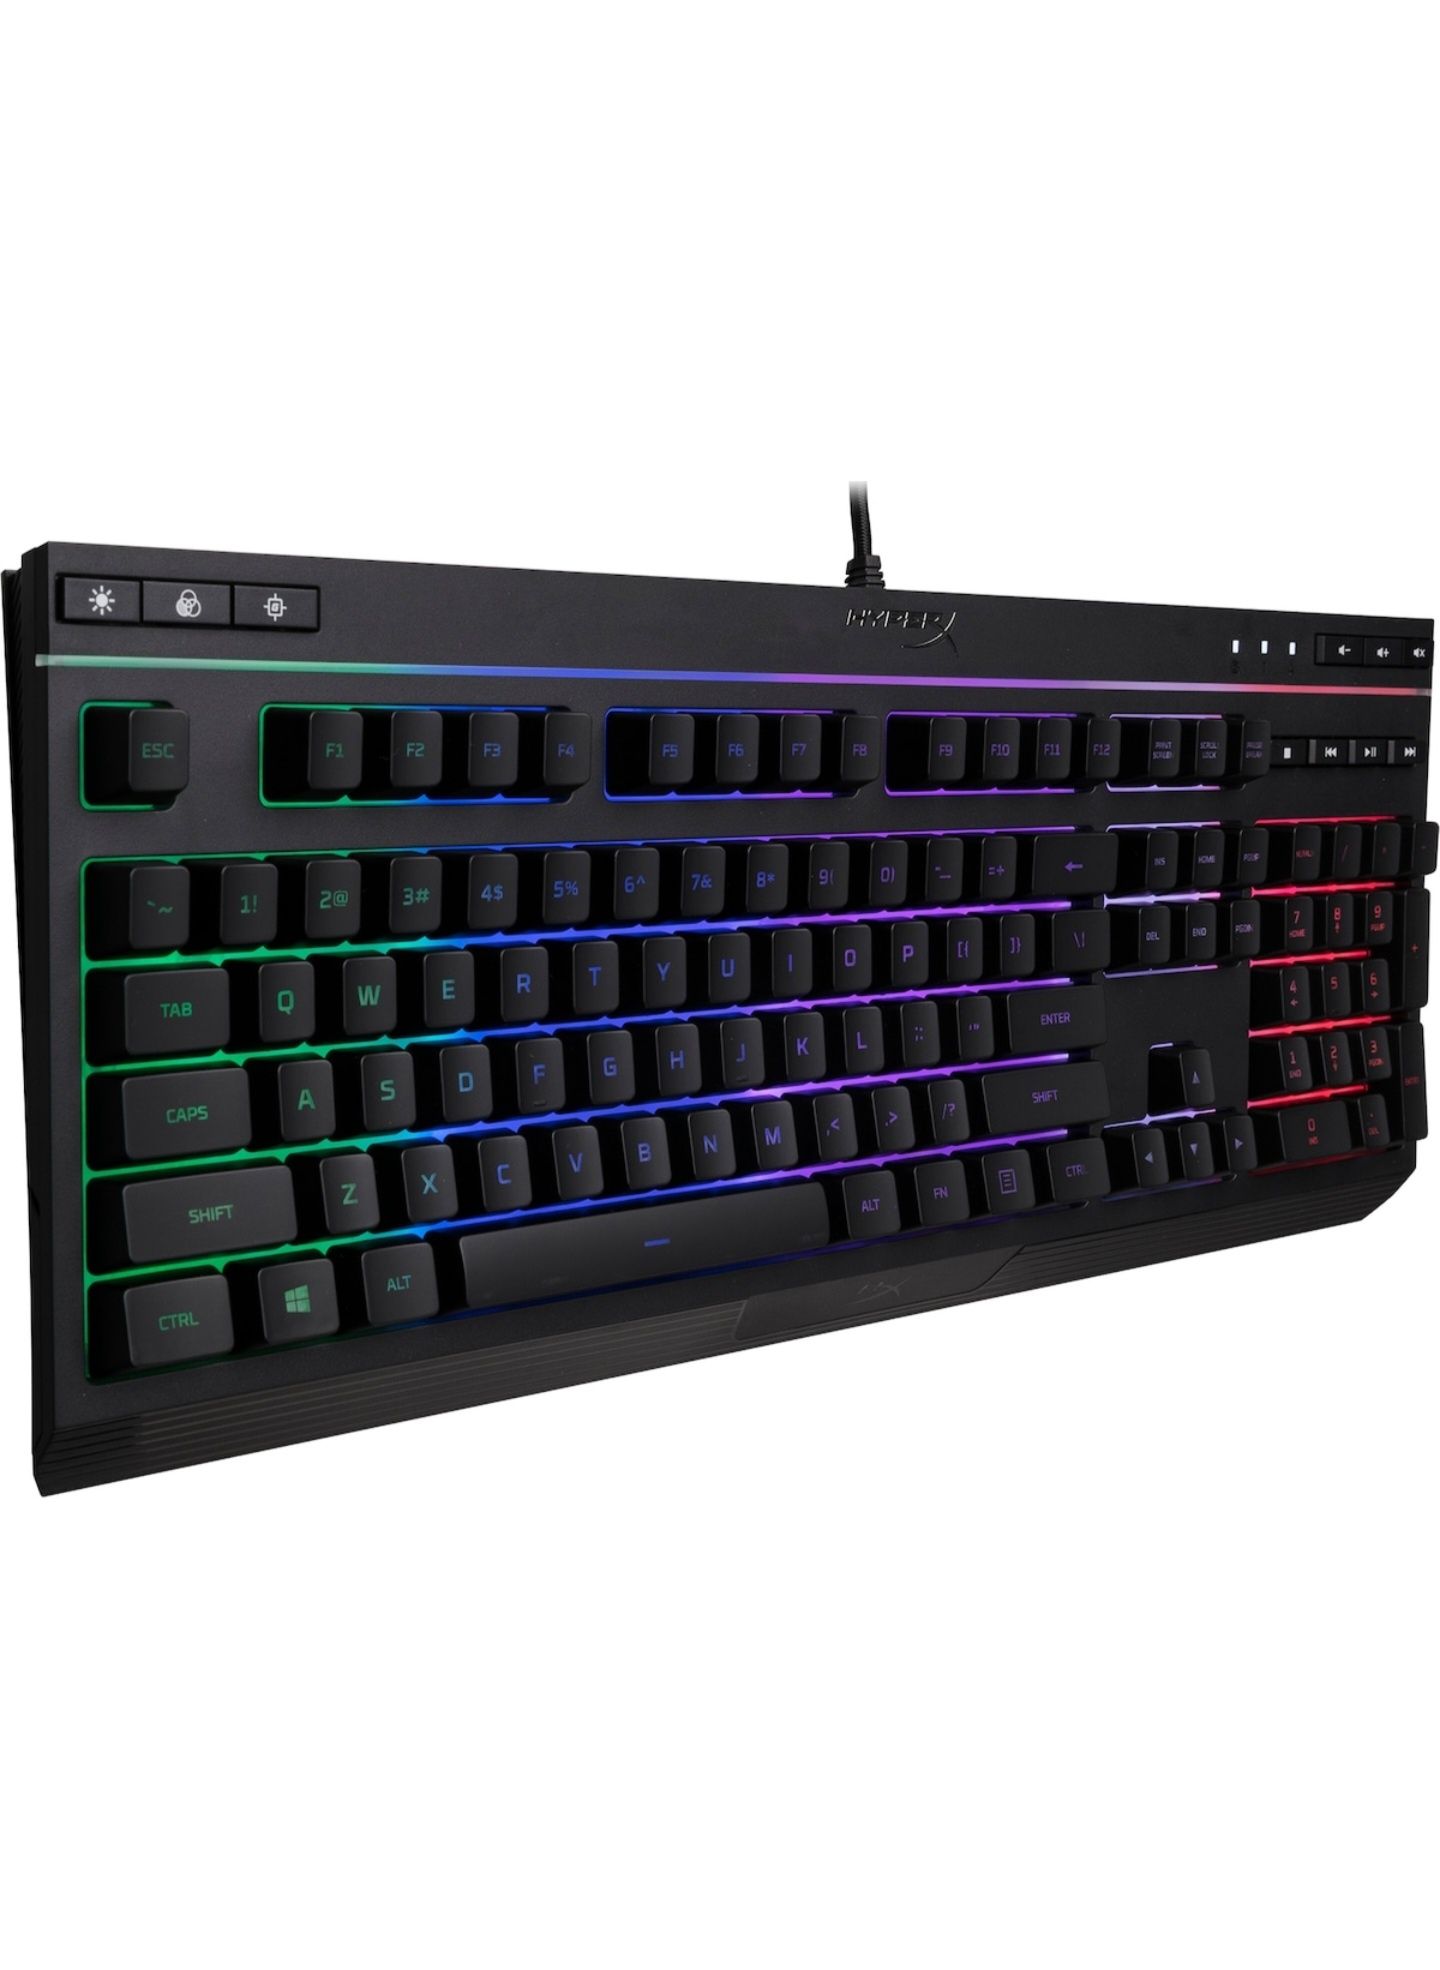 Tastatura HyperX Alloy Core RGB